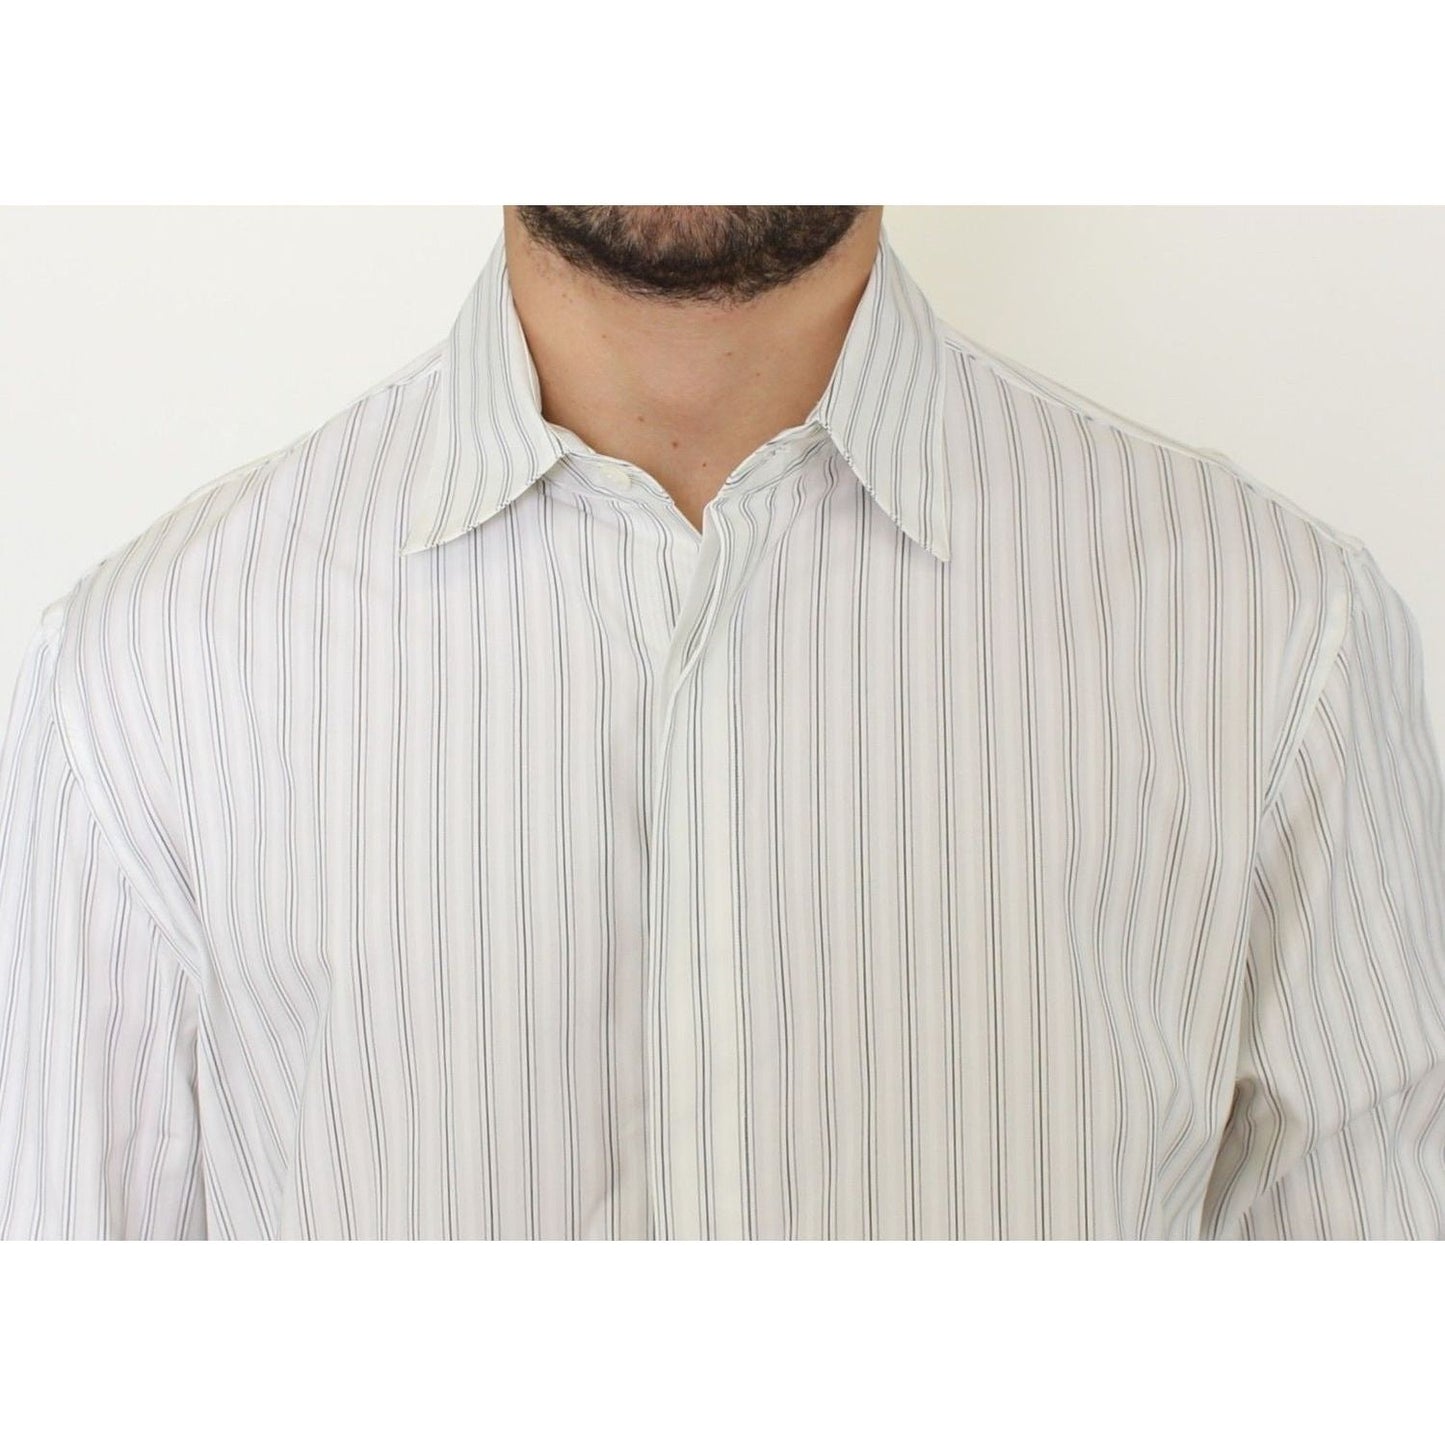 Ermanno ScervinoElegant Striped Cotton Casual ShirtMcRichard Designer Brands£179.00